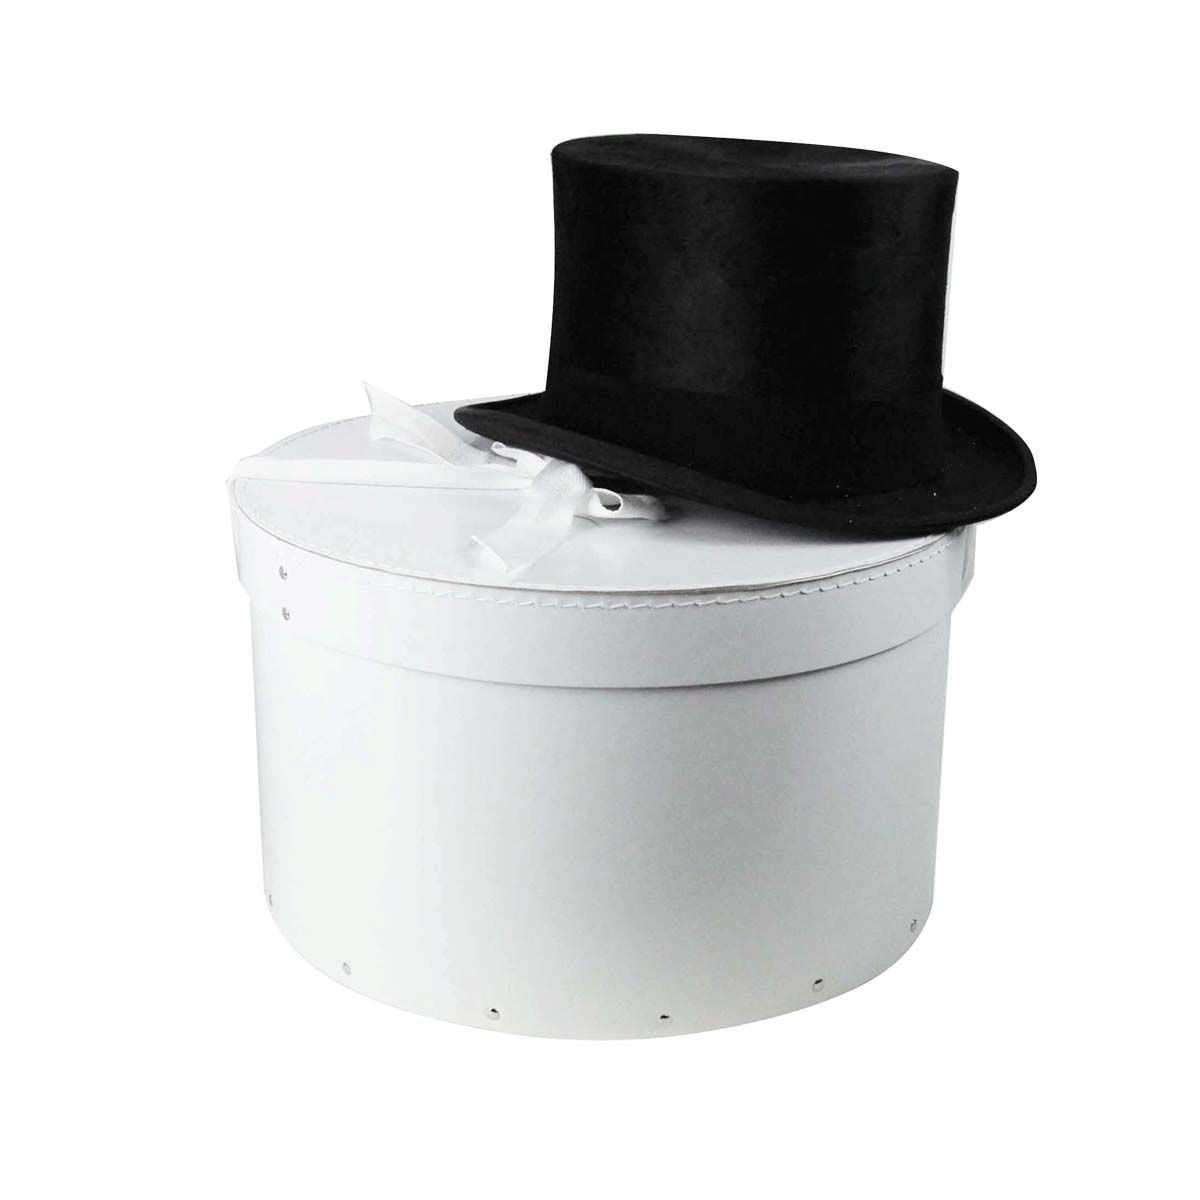 Boite à chapeau, en carton - Le Szapo Hat Shop Cracovie